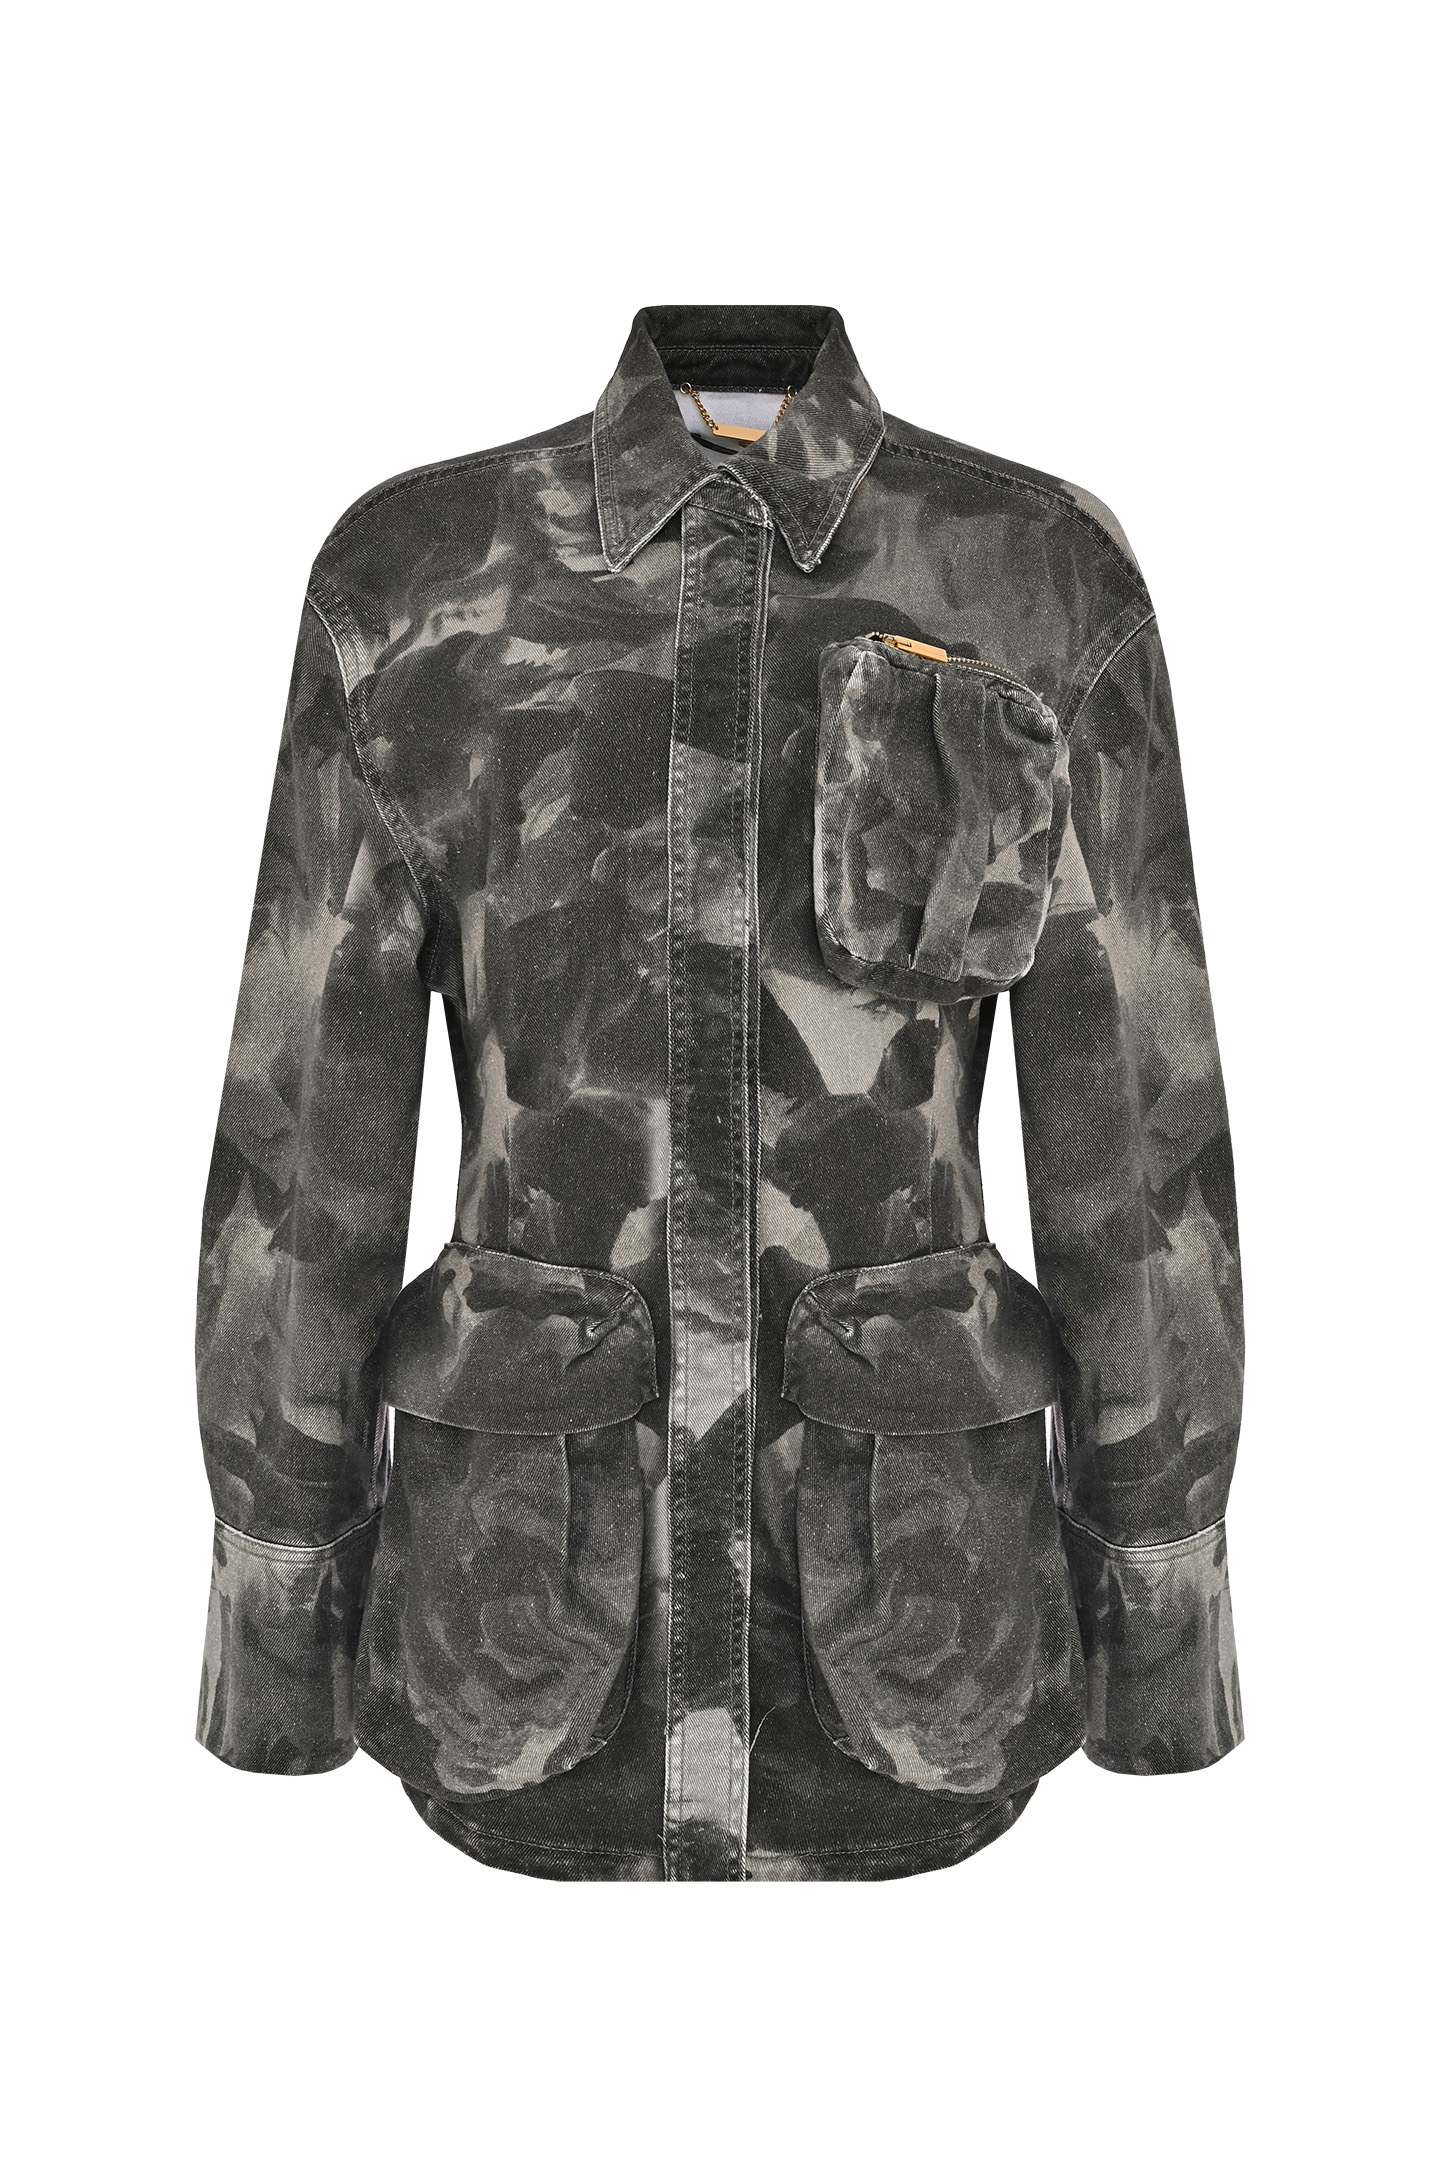 Куртка BLUMARINE P32 2C191A , цвет: Серый, Женский